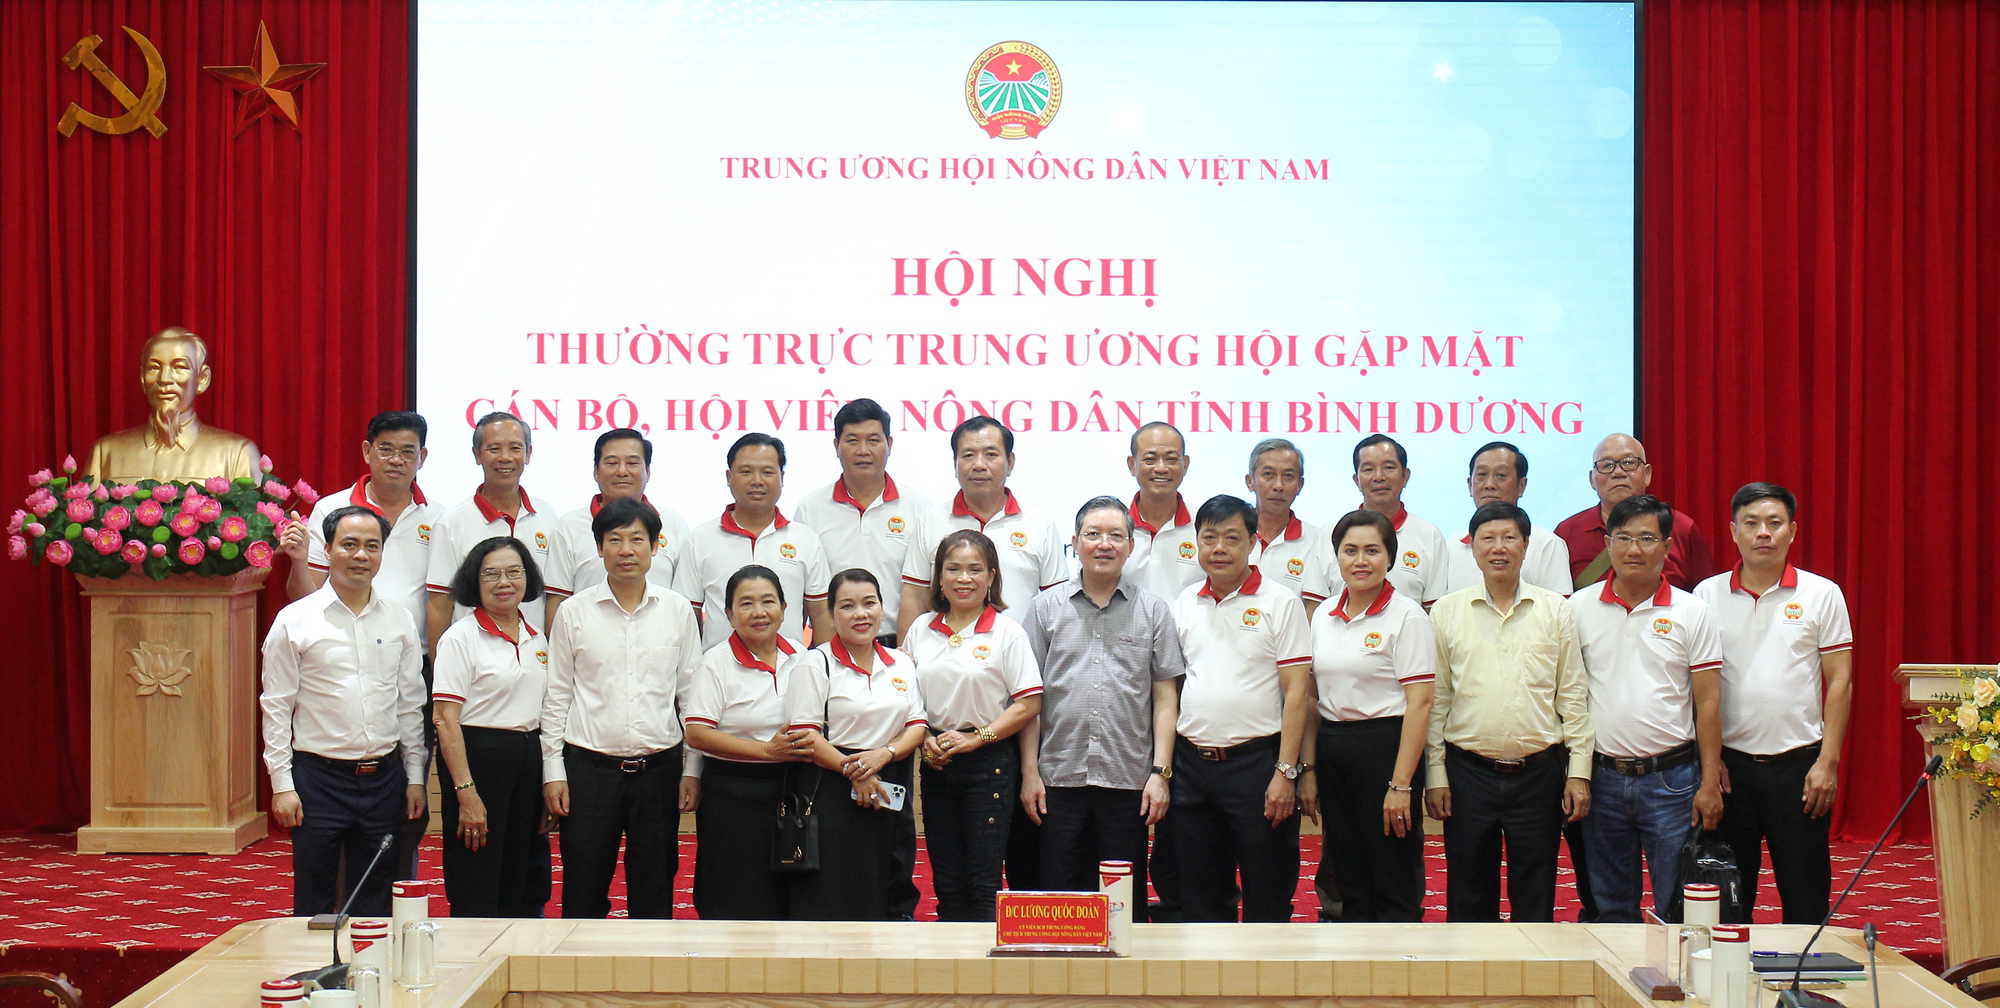 Thường trực Trung ương Hội Nông dân Việt Nam gặp mặt cán bộ, hội viên, nông dân tỉnh Bình Dương - Ảnh 6.